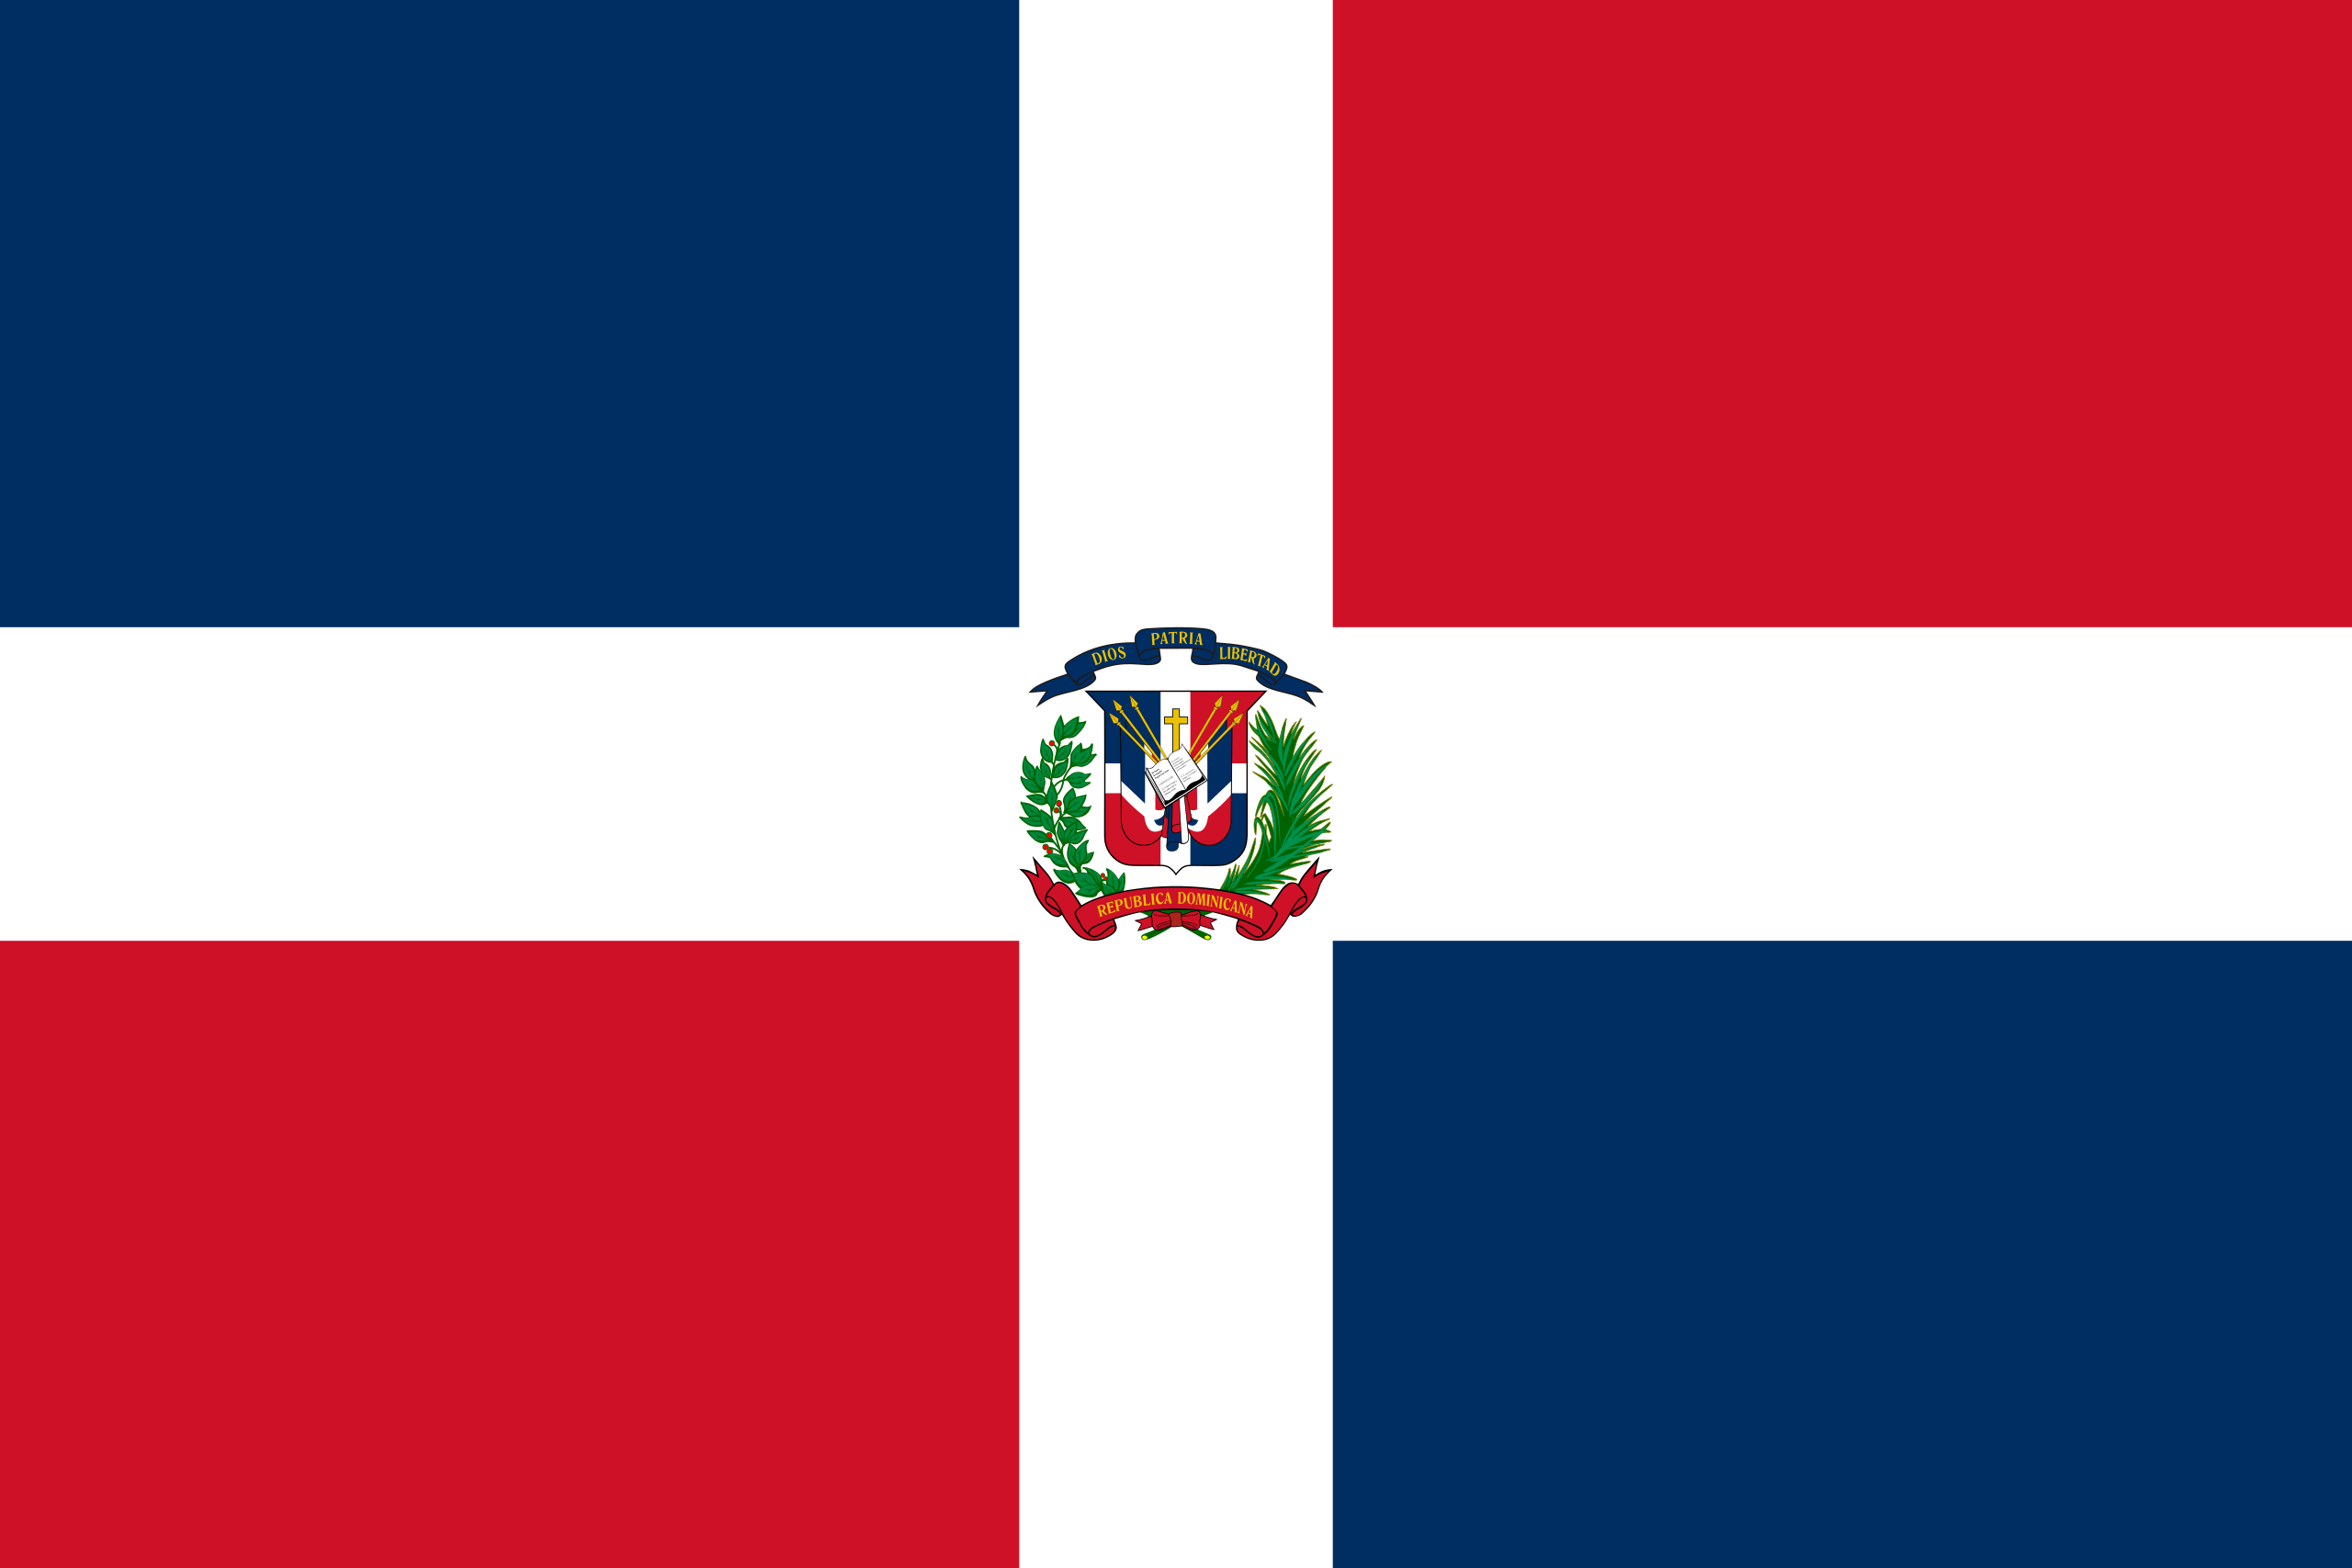 republica-dom-bandera